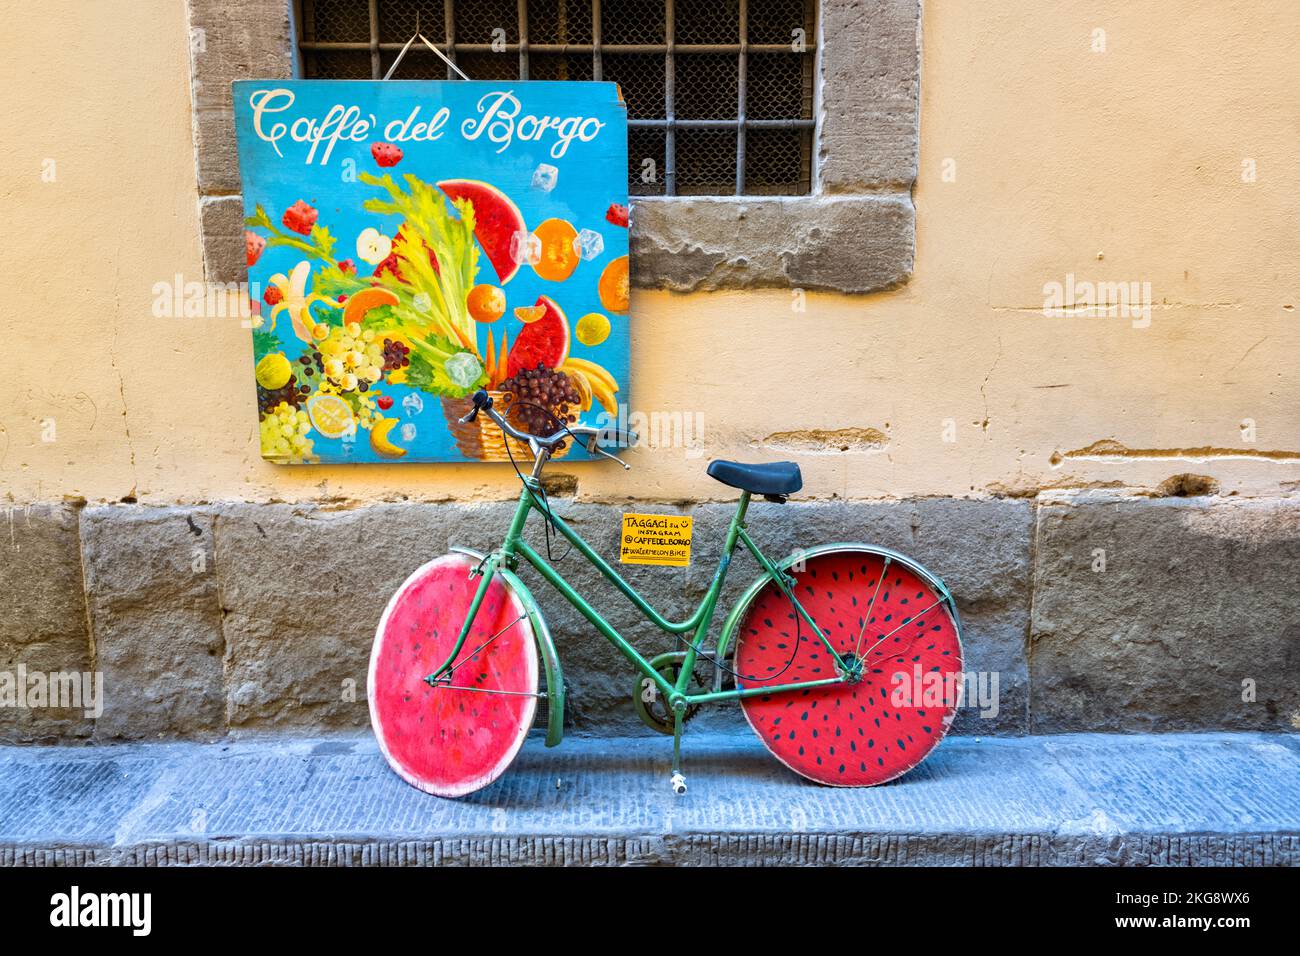 Vélo vert avec roues de pastèque rouges sous un panneau de couleur vive pour Caffe del Borgo, Florence, Italie Banque D'Images